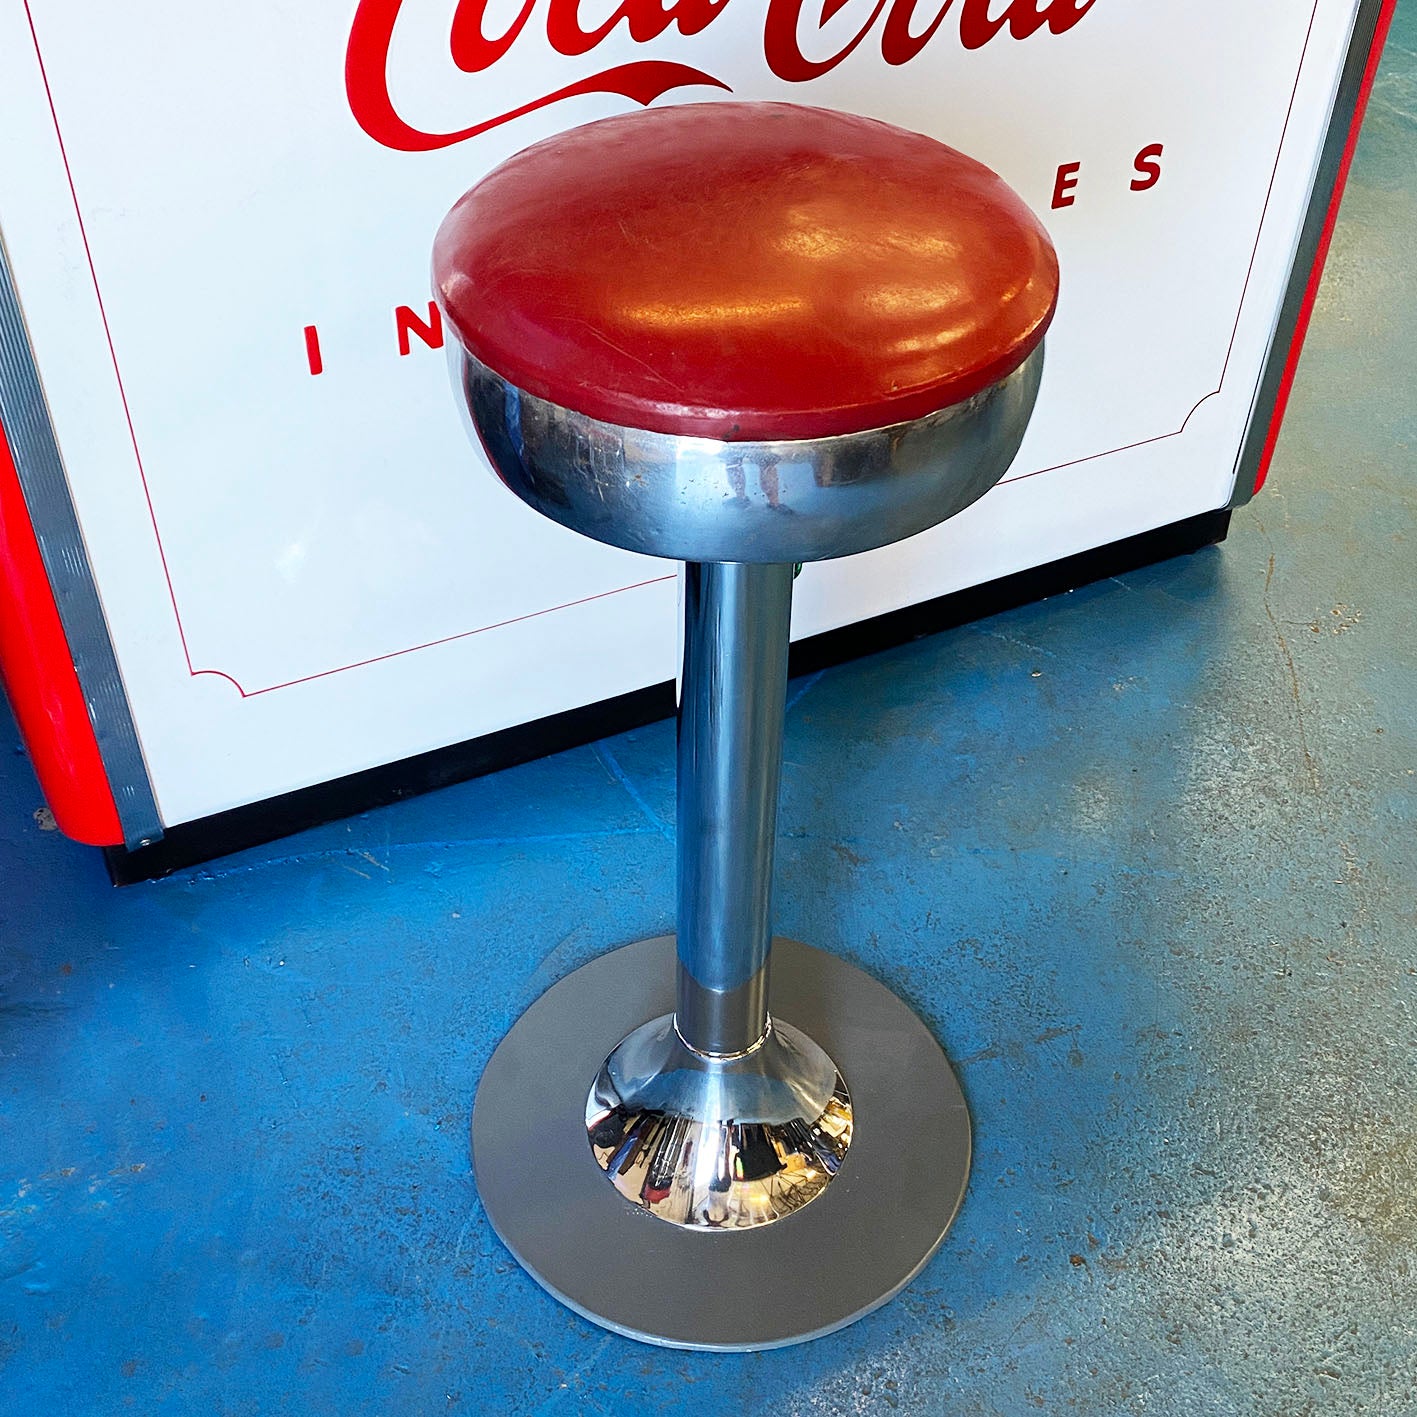 Original vintage 1950s Coca-Cola Stool